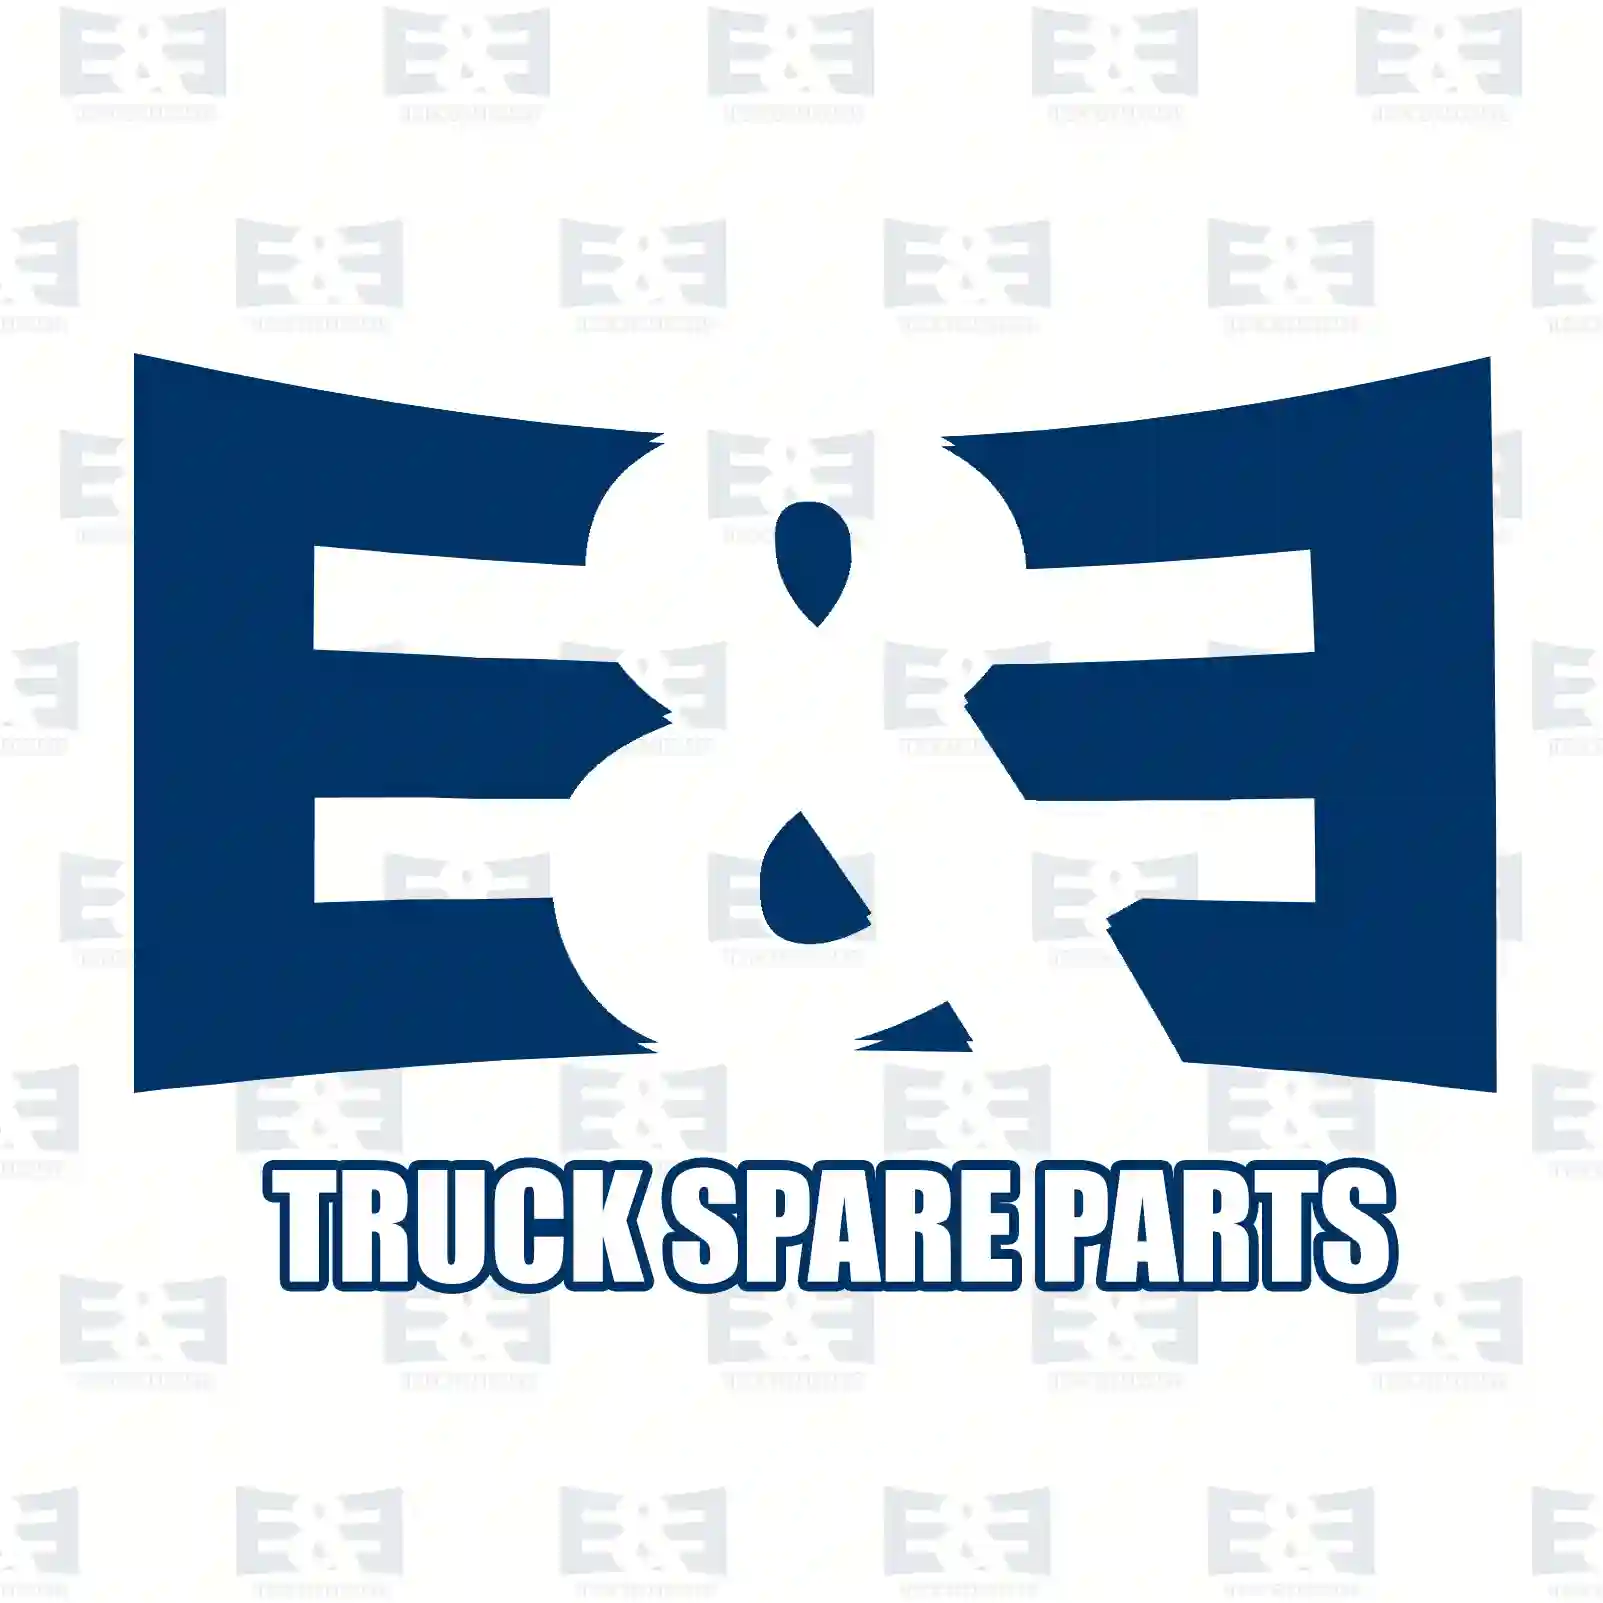 Disc brake pad kit, 2E2297452, M91002704, M91002703, M91002704, 3057317900, 725857 ||  2E2297452 E&E Truck Spare Parts | Truck Spare Parts, Auotomotive Spare Parts Disc brake pad kit, 2E2297452, M91002704, M91002703, M91002704, 3057317900, 725857 ||  2E2297452 E&E Truck Spare Parts | Truck Spare Parts, Auotomotive Spare Parts